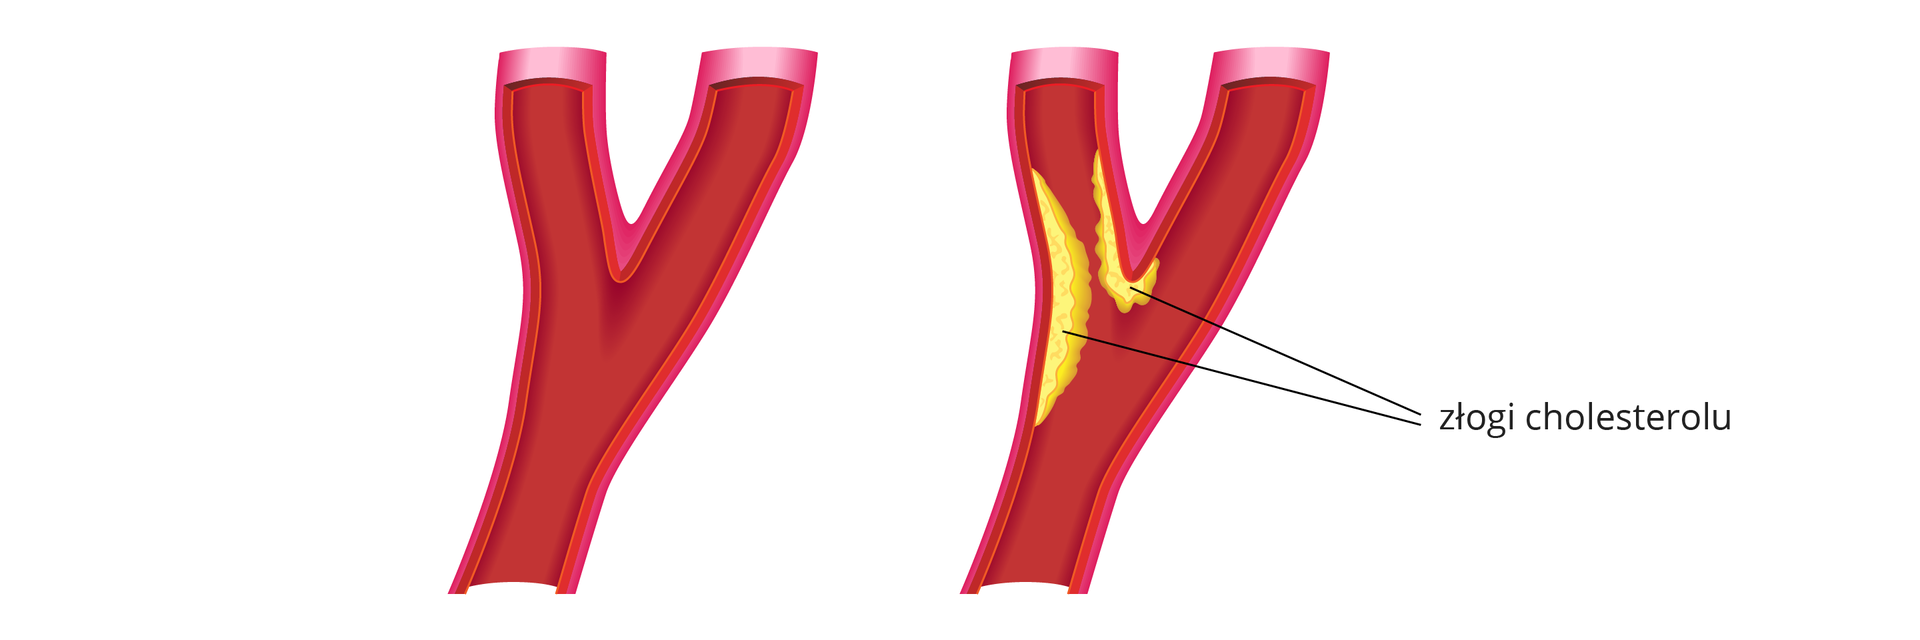 Ilustracja przedstawia schematyczny obraz dwóch tętnic wieńcowych. Tętnice u dołu są pojedyncze i rozwidlają się w połowie wysokości na dwie odnogi. Lewa tętnica to przykład zdrowego naczynia. Z kolei prawa jest zwężona w lewej odnodze. Na ściankach tętnicy dostrzegalne są żółte złogi cholesterolu, które zwężają kanał przepływu krwi.